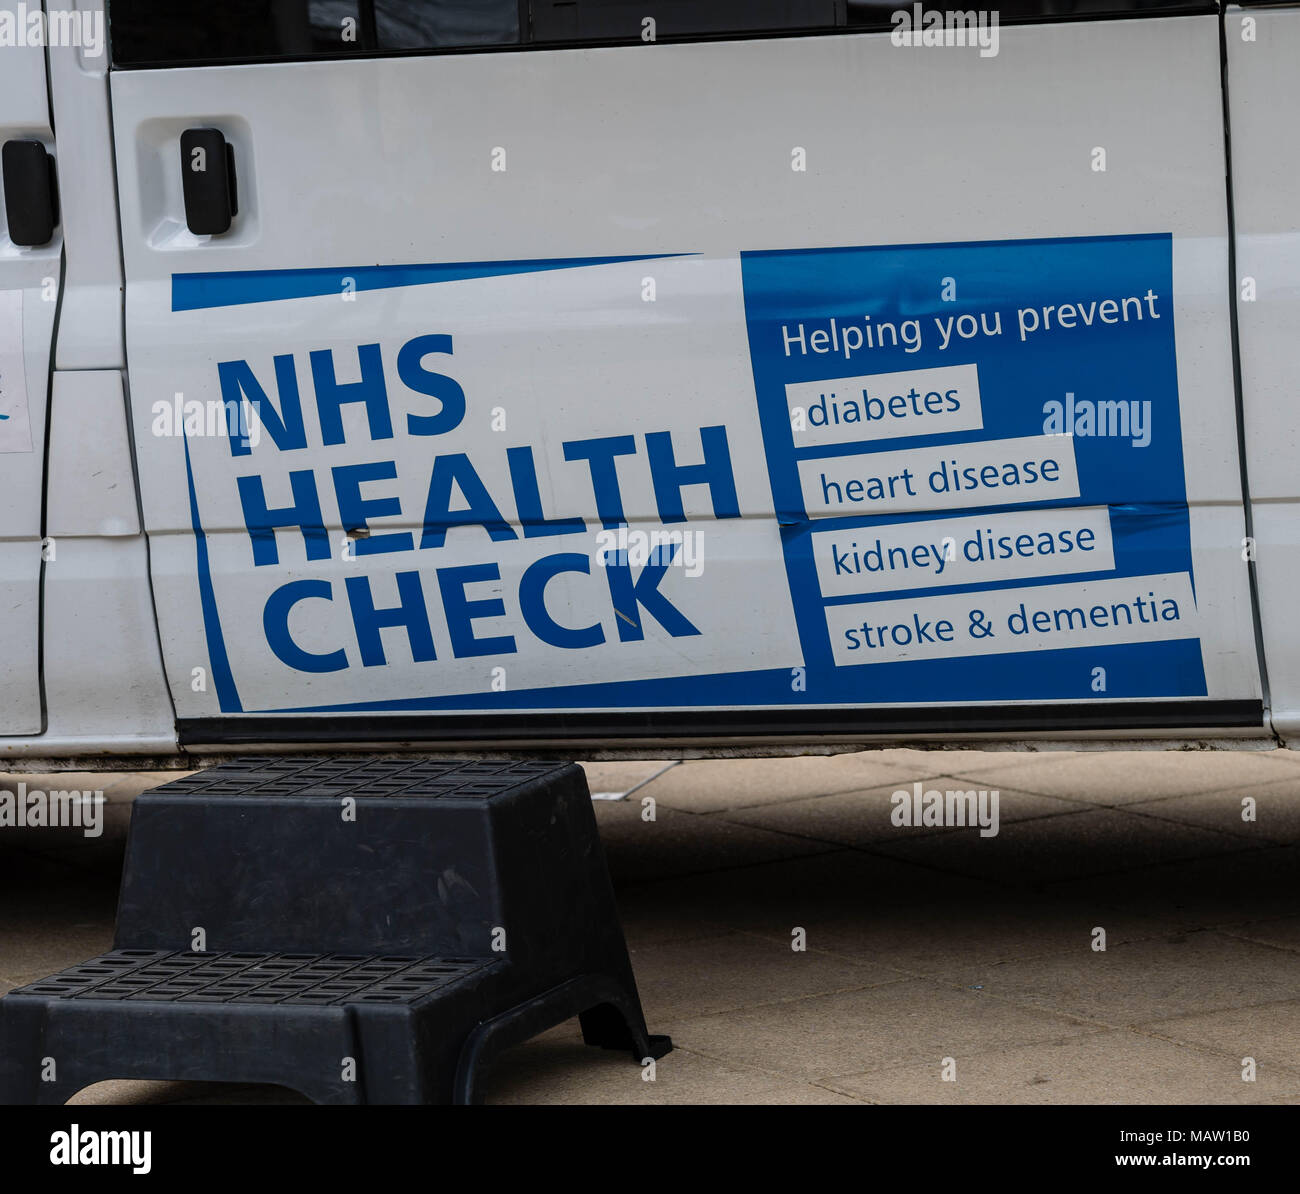 Anglian empresa comunitaria (ACE) Salud y bienestar NHS Health Check van en Brentwood, Essex Foto de stock